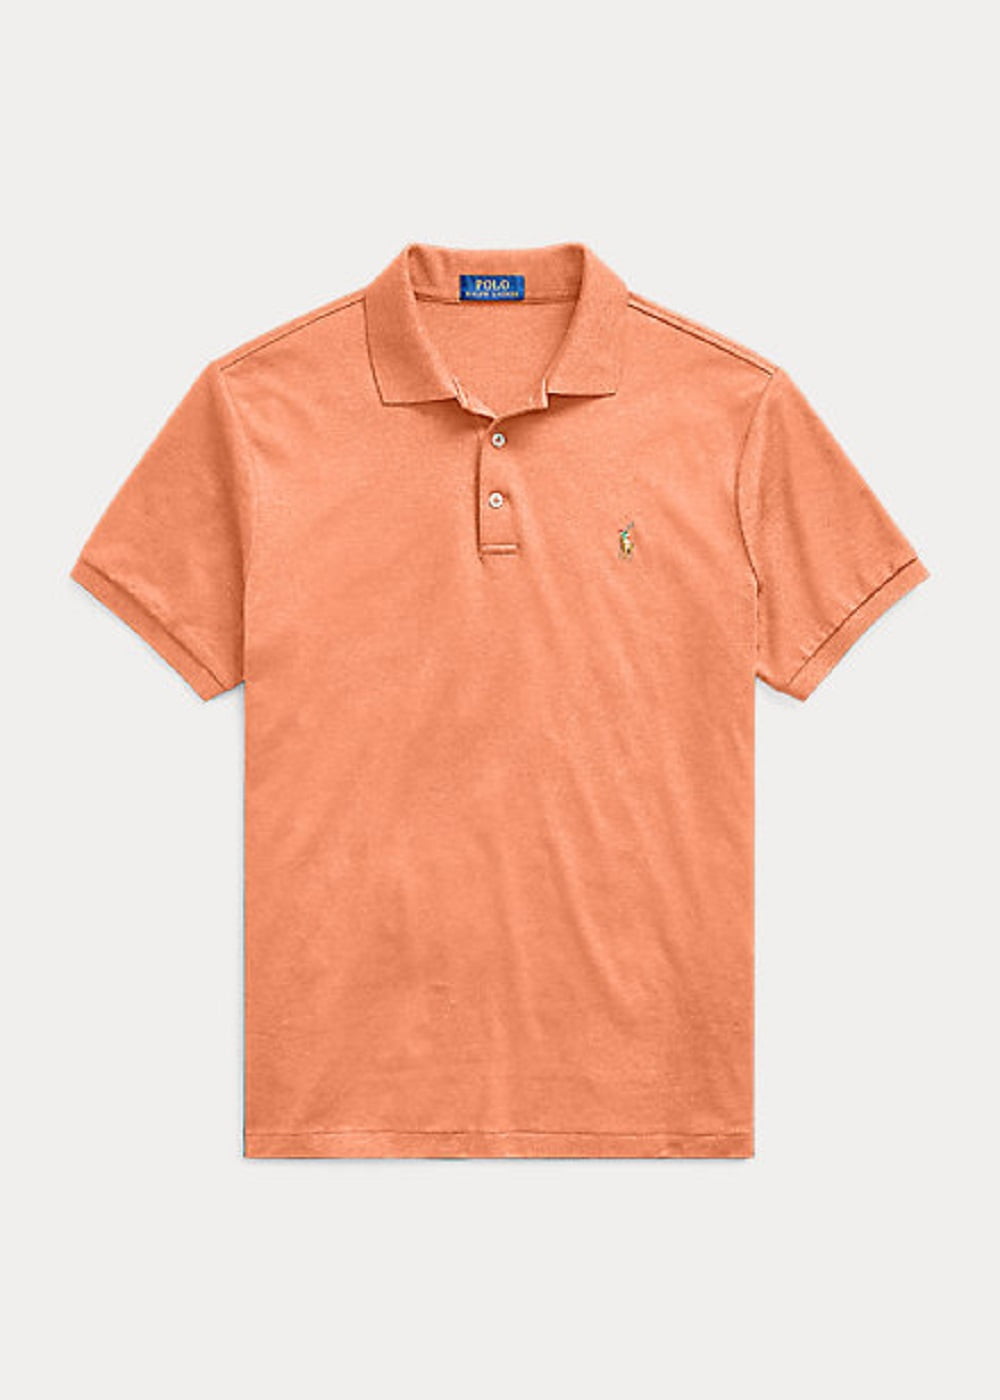 Worden Meander Grommen Polo Ralph Lauren Men's Classic Fit Soft Cotton Polo Shirt, Orange, M -  Walmart.com